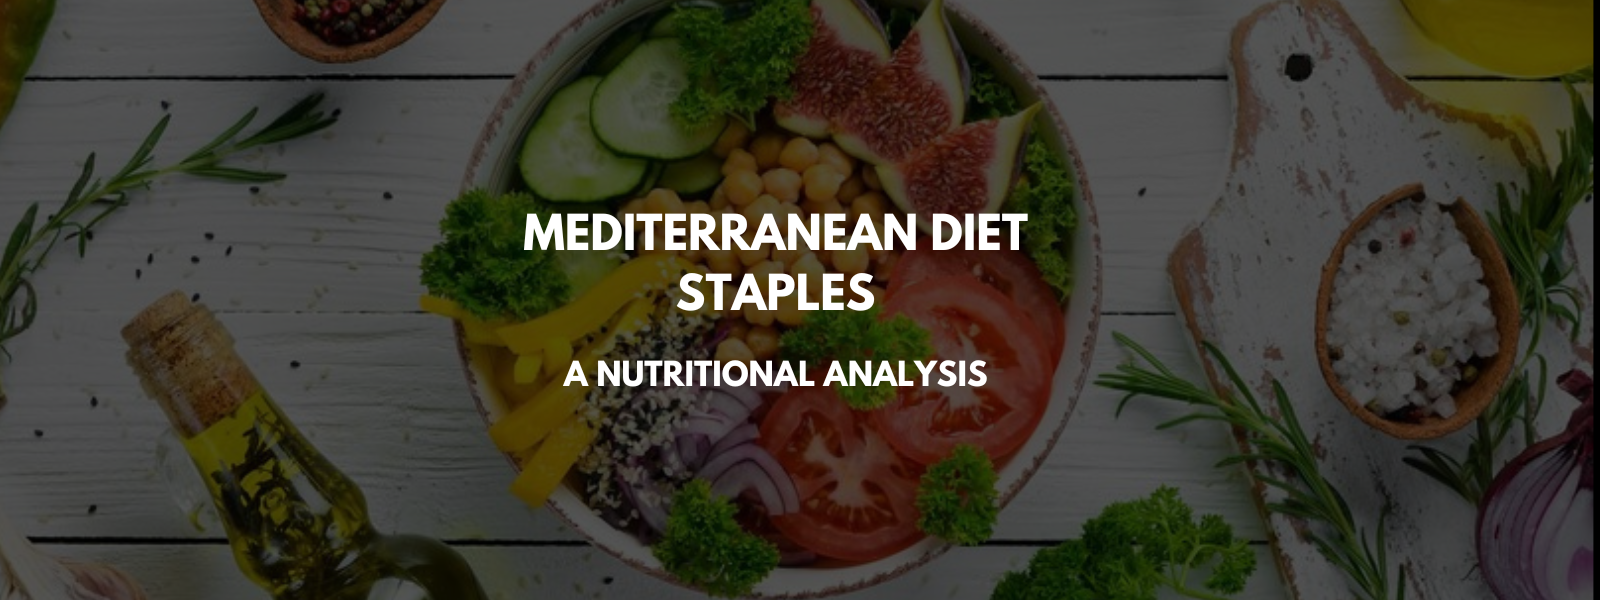 Mediterranean Diet Staples: A Nutritional Analysis